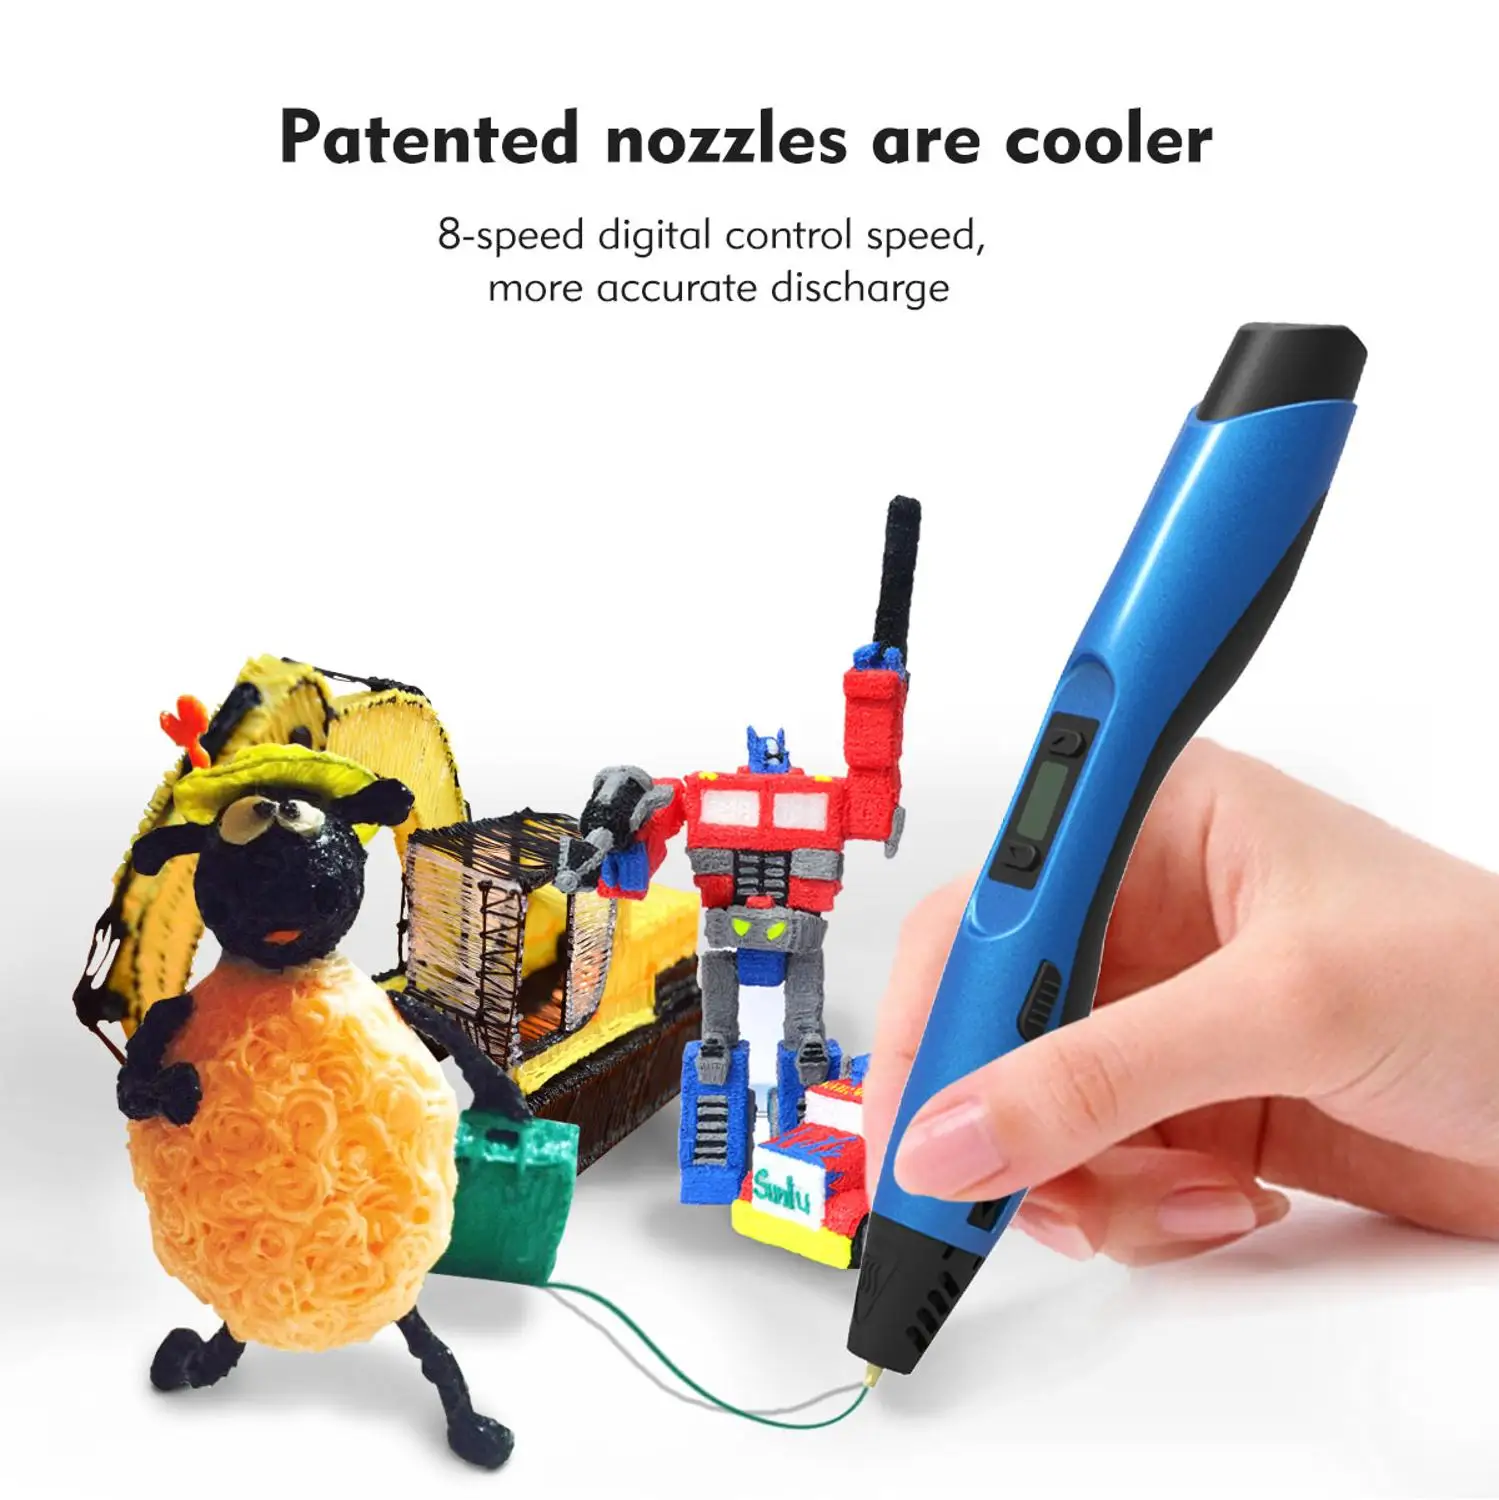 Enotepad nové SL-300 3D pero na Podporu 1.75 MM CHKO vlákna a LCD ovládanie teploty, bezpečný pre deti 3d tlač pero